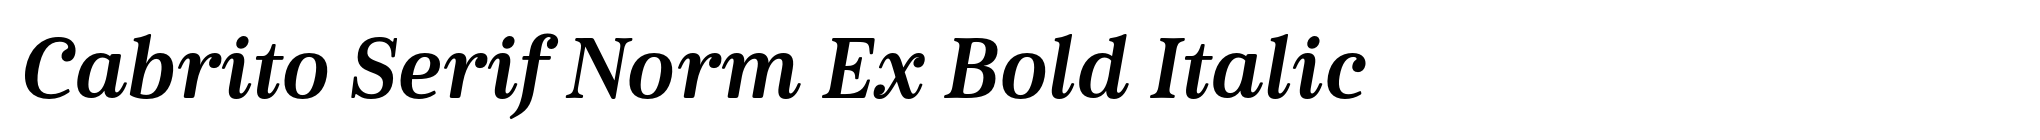 Cabrito Serif Norm Ex Bold Italic image